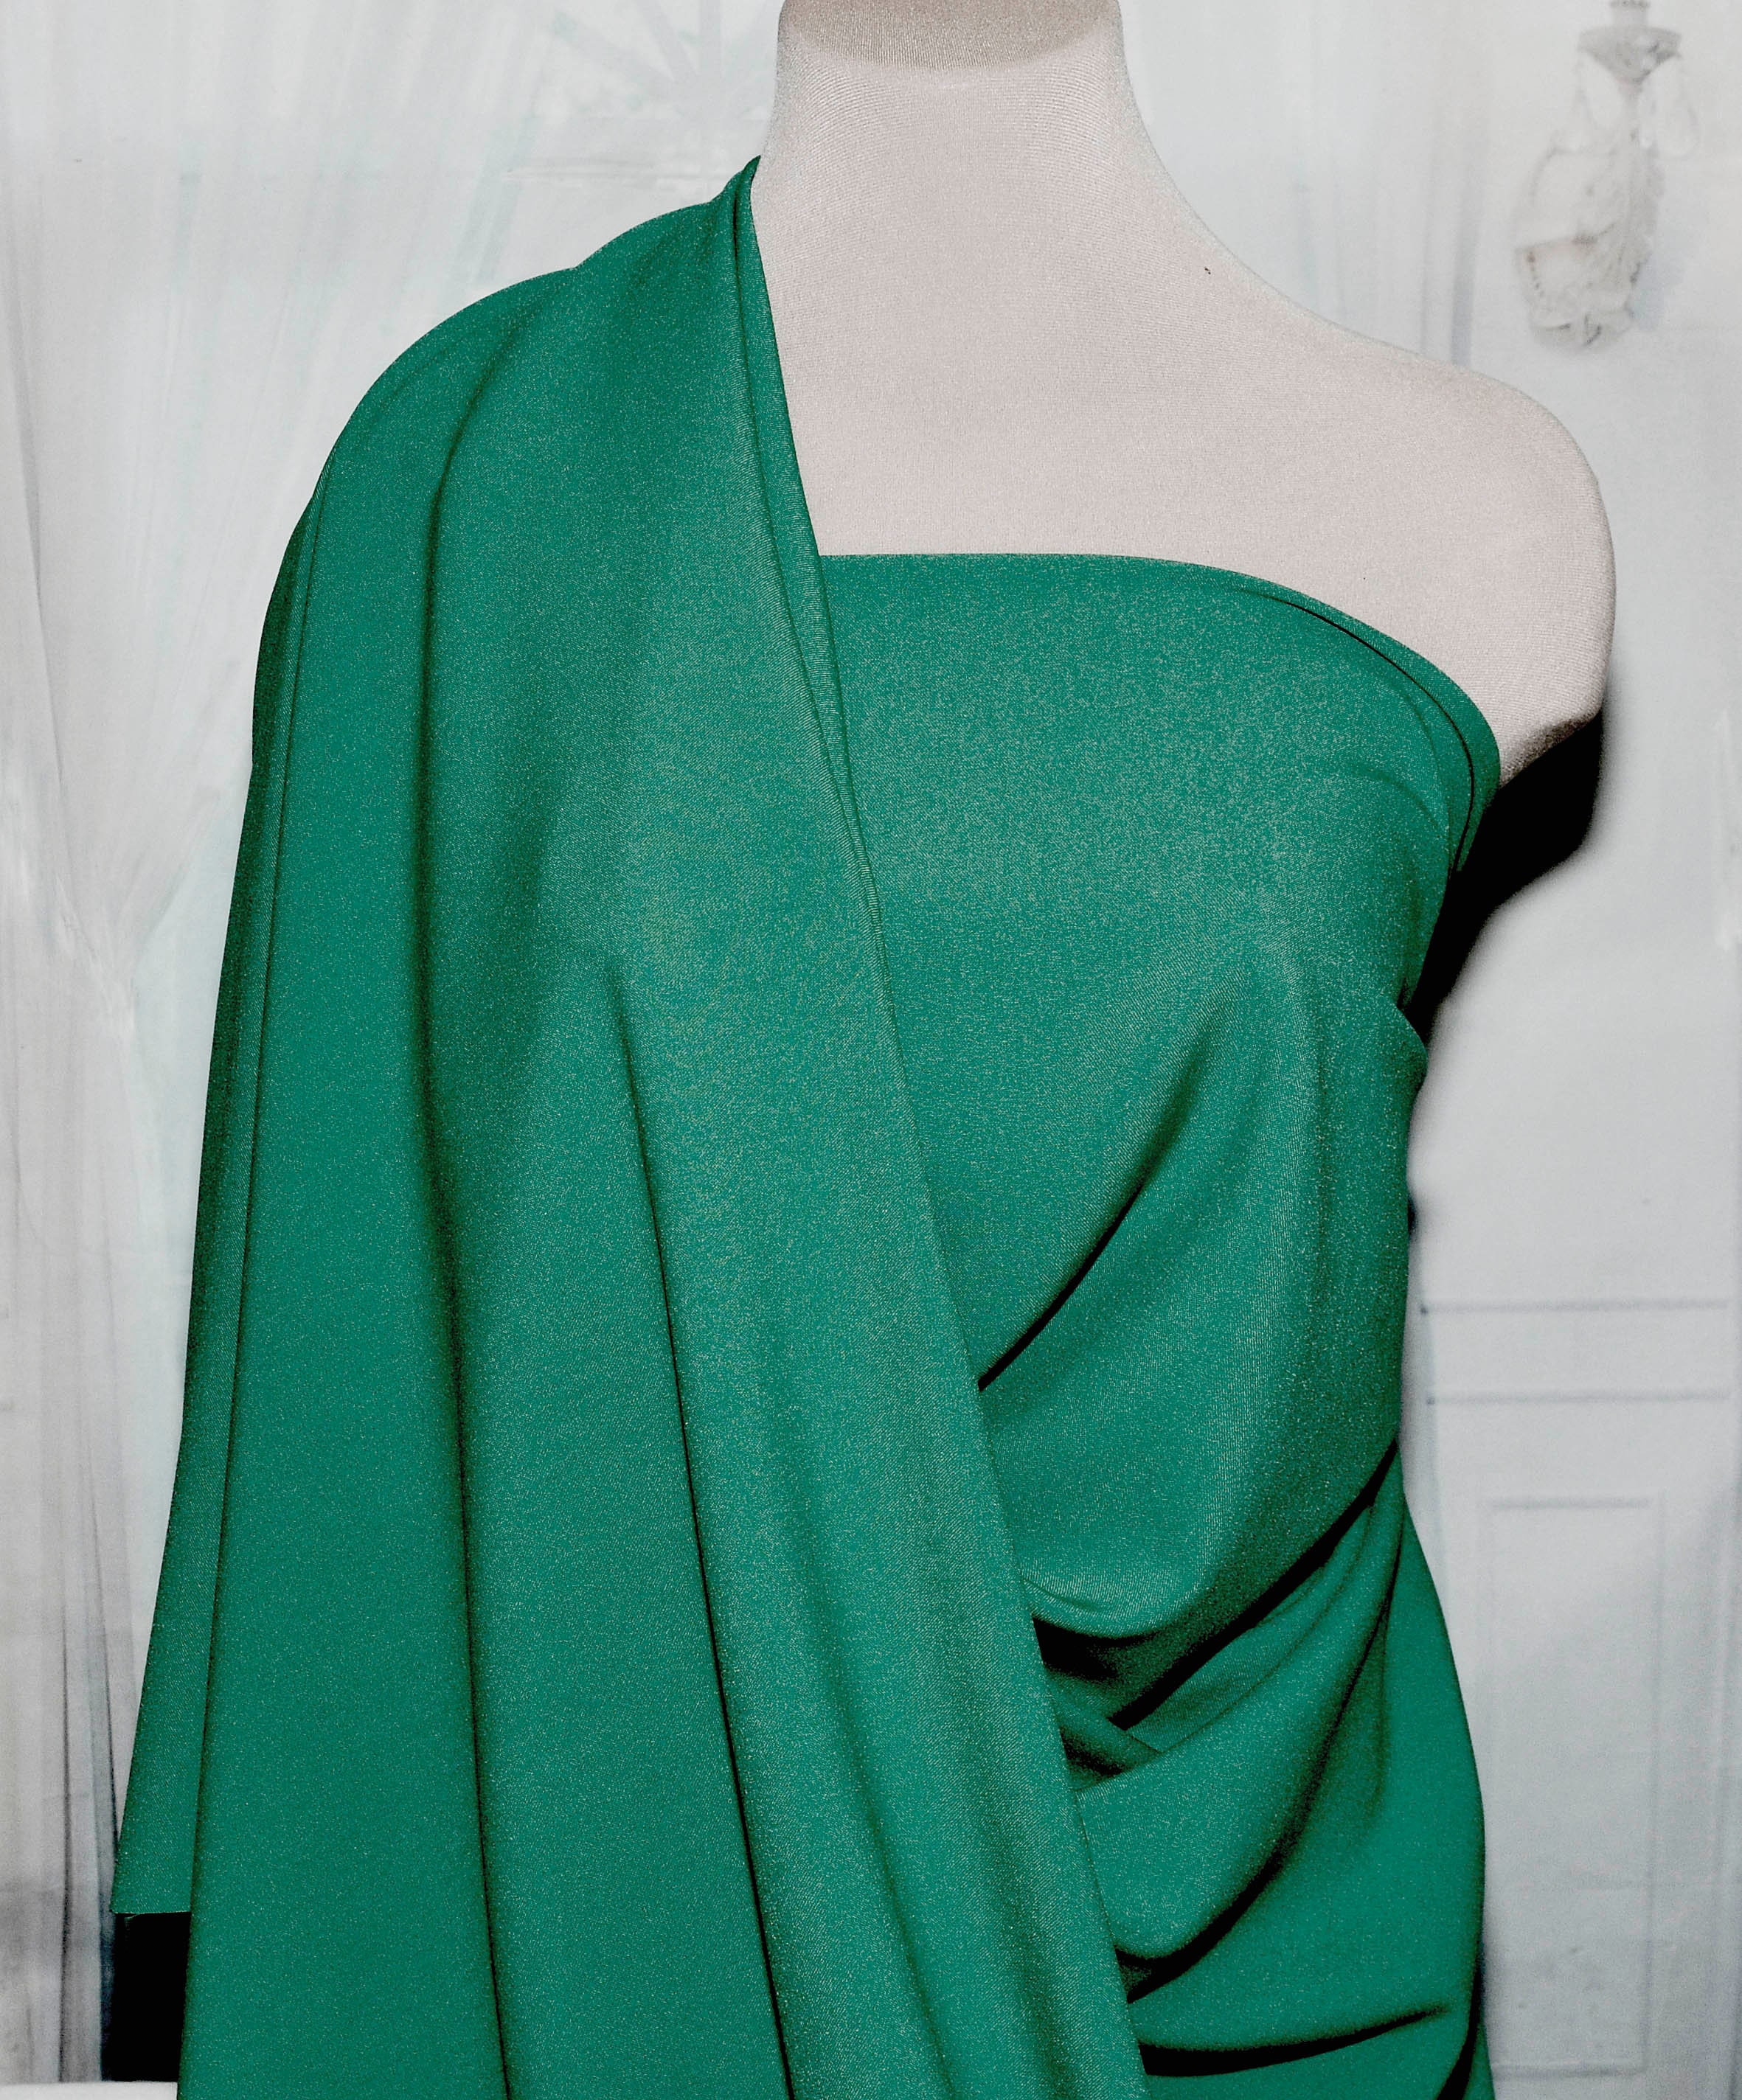 Stretch Gaberdine Fabric 1 Yard Emerald ..58 Wide | Etsy